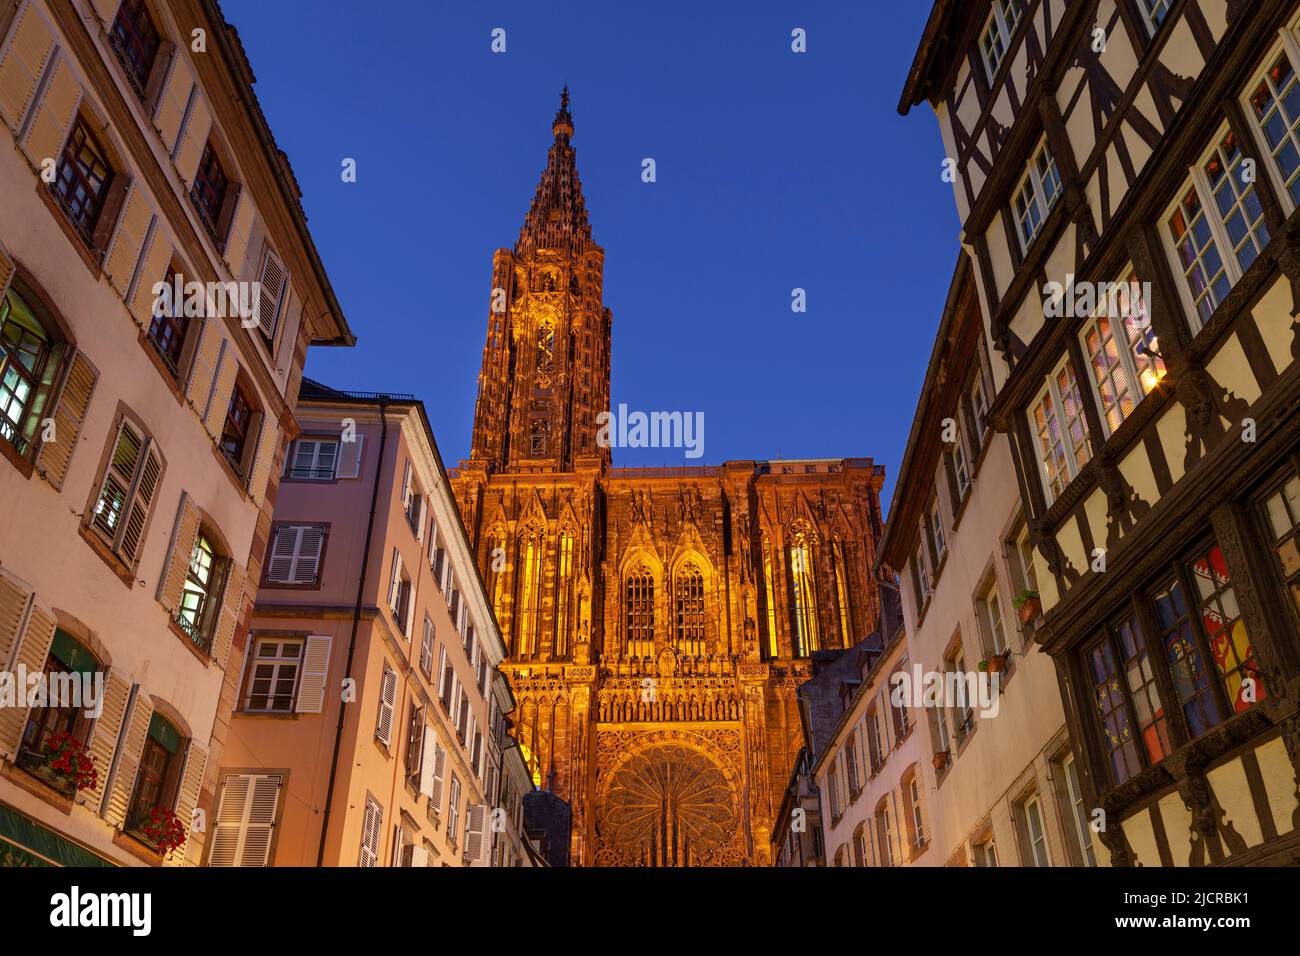 La Cattedrale di Strasburgo ornata domina gli edifici a Strasburgo, Alsazia, Francia Foto Stock